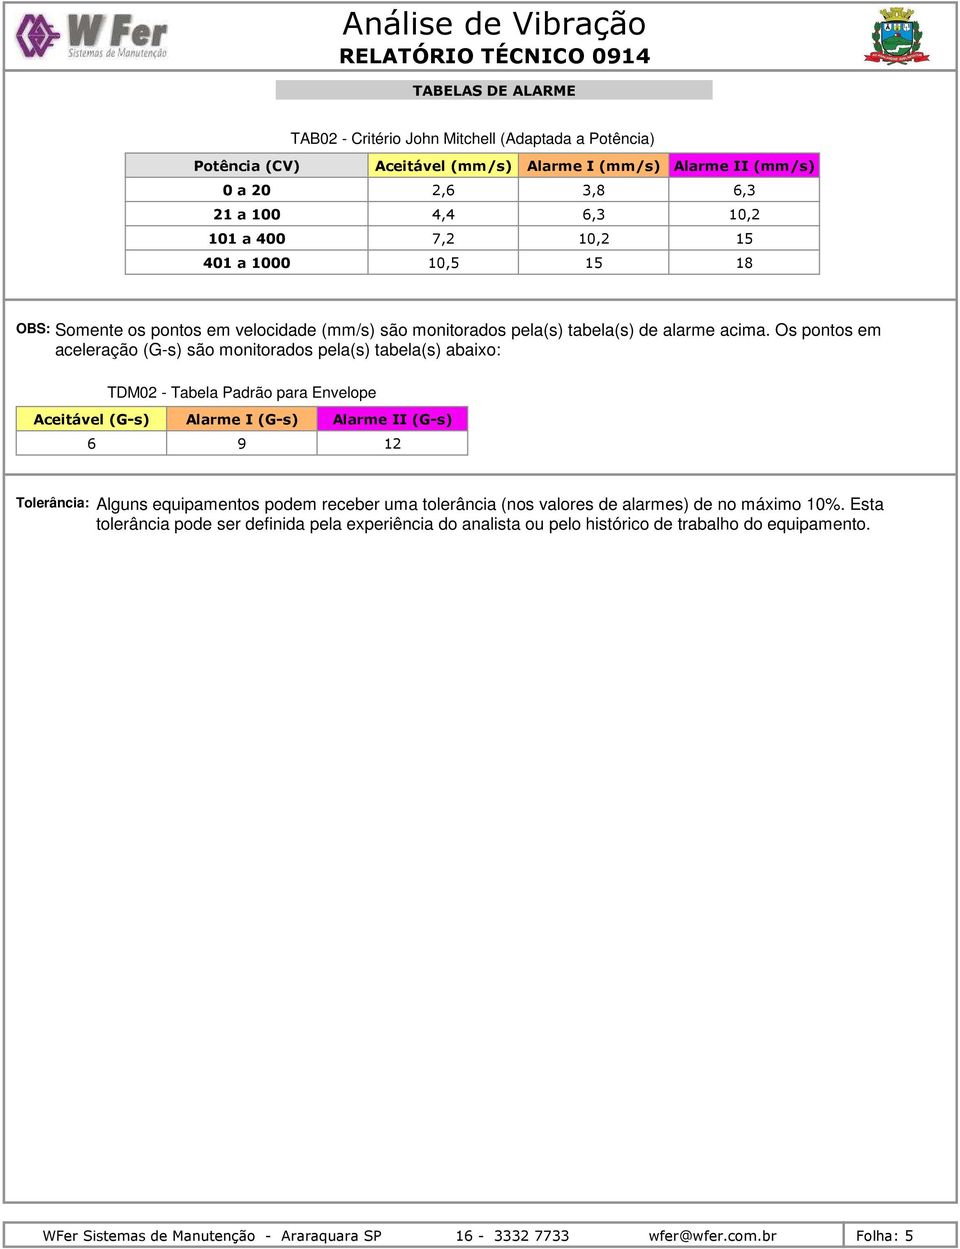 Os pontos em aceleração (G-s) são monitorados pela(s) tabela(s) abaixo: TDM2 - Tabela Padrão para Envelope Aceitável (G-s) 6 Alarme I (G-s) Alarme II (G-s) 9 12 Tolerância: Alguns